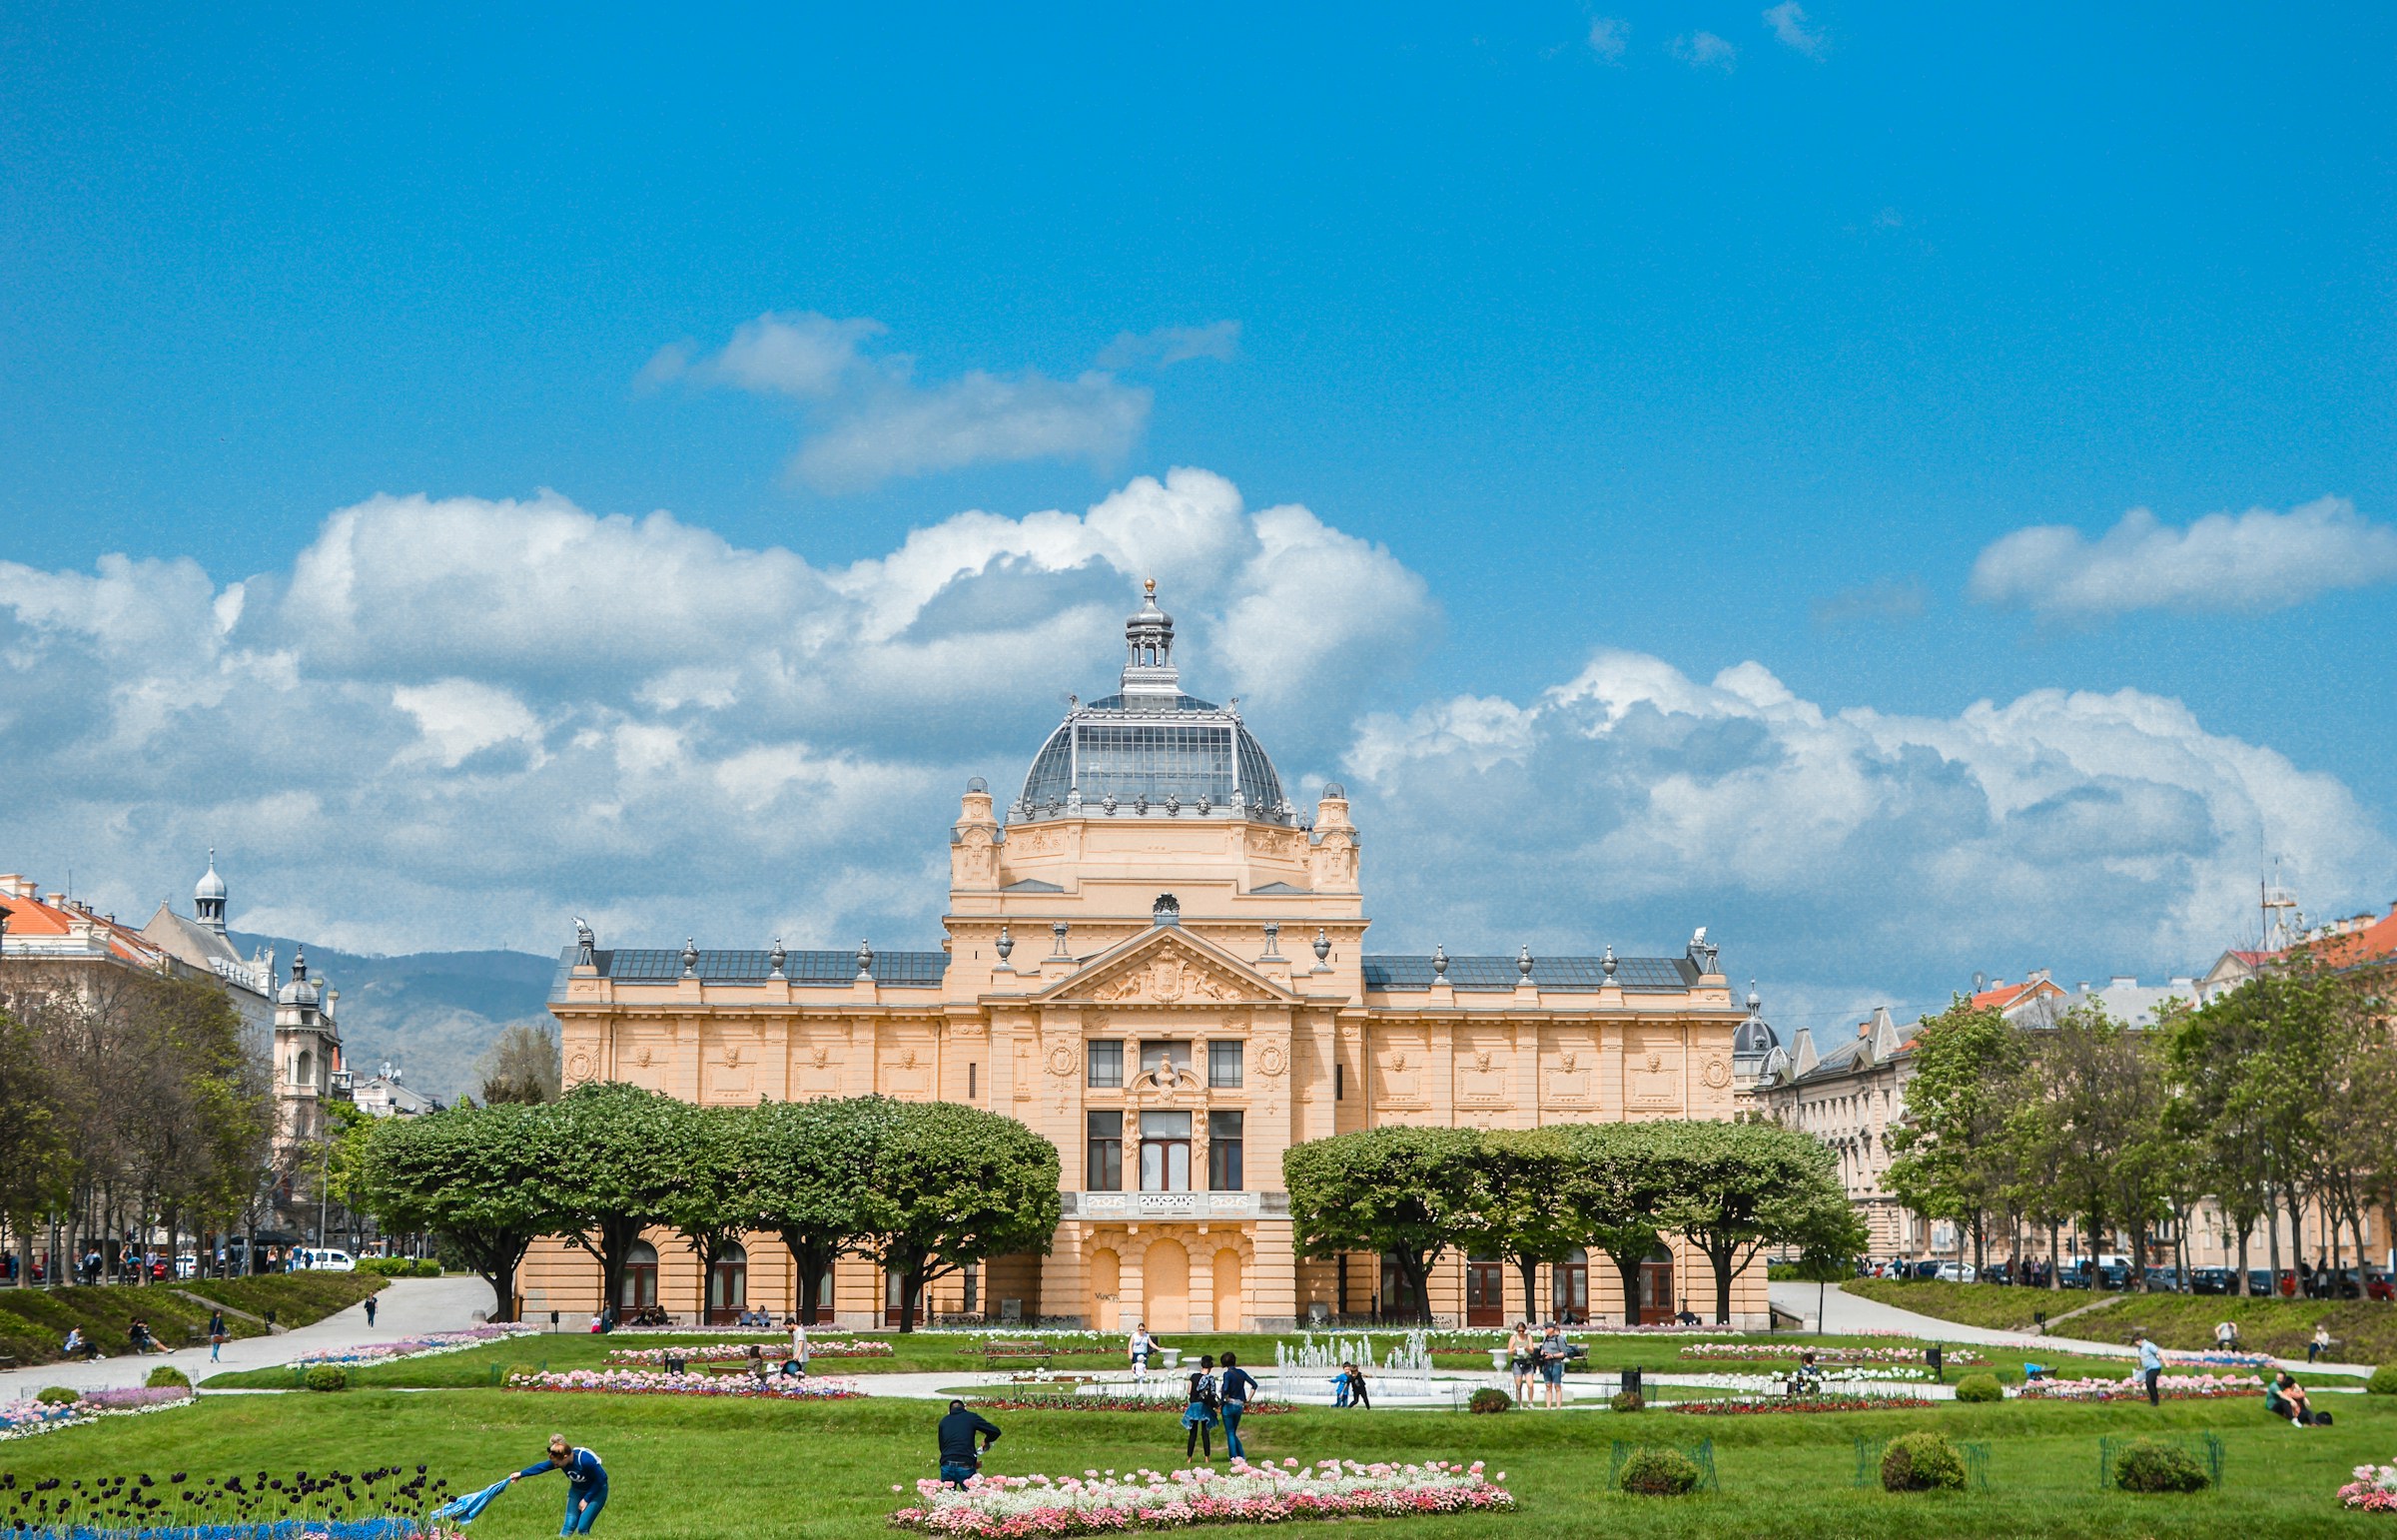 Elegant historisk byggnad med kupoltak mot en blå himmel omgiven av en välskött offentlig trädgård med blomrabatter och besökare i Zagreb.